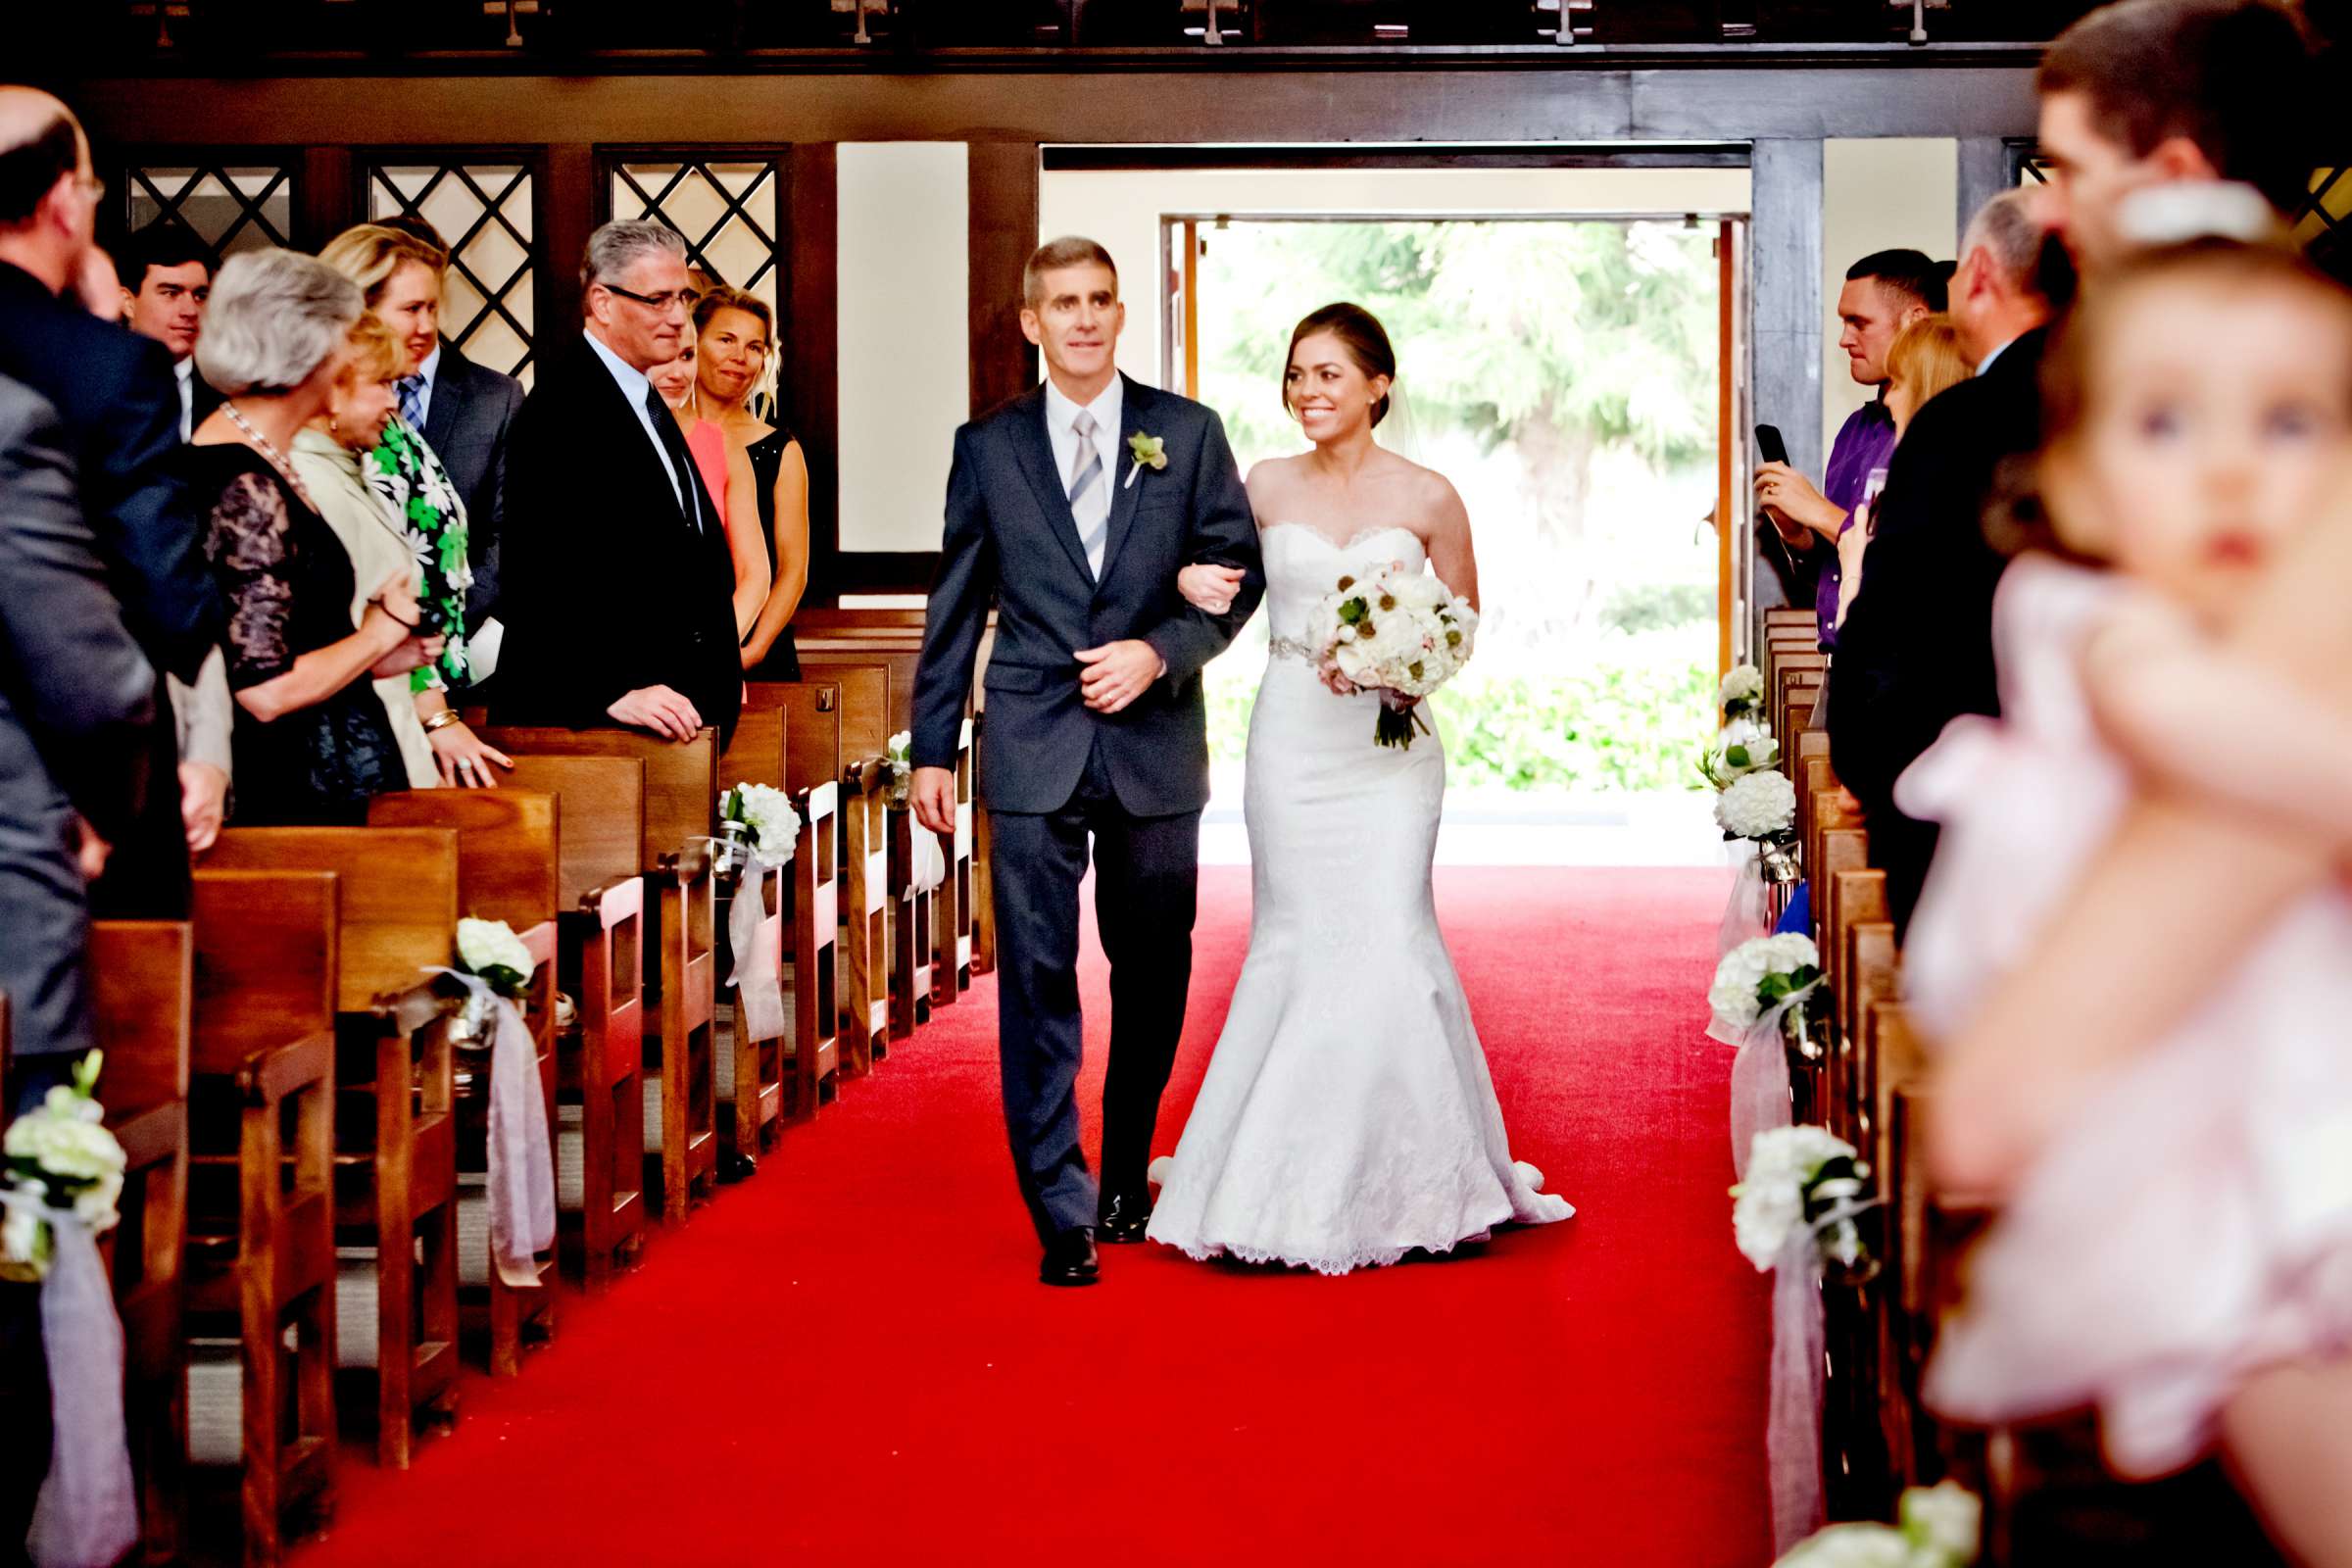 Admiral Kidd Club Wedding coordinated by I Do Weddings, Ashley and Rhett Wedding Photo #358470 by True Photography